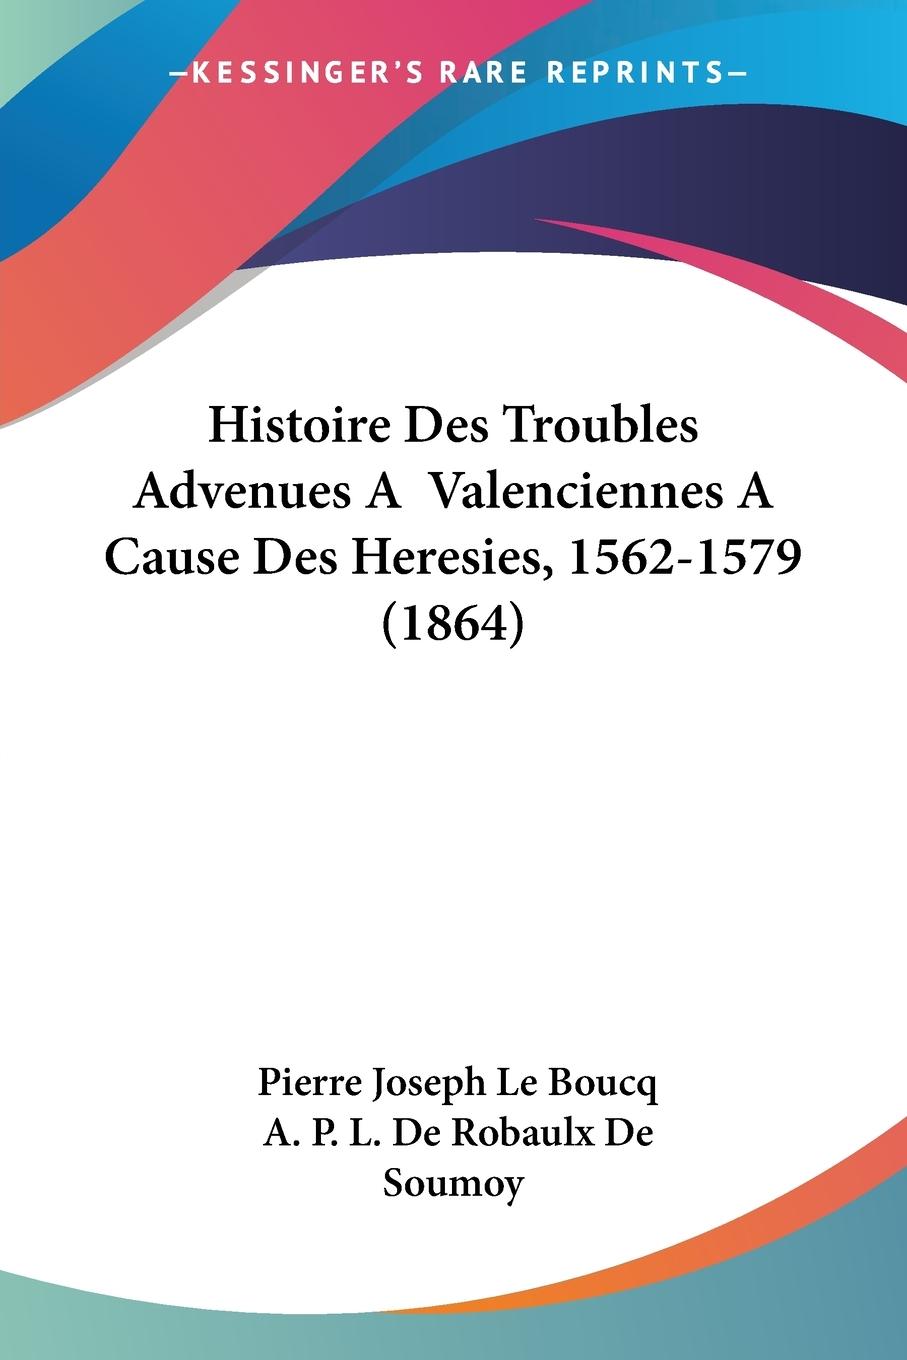 Histoire Des Troubles Advenues A Valenciennes A Cause Des Heresies, 1562-1579 (1864) - Le Boucq, Pierre Joseph